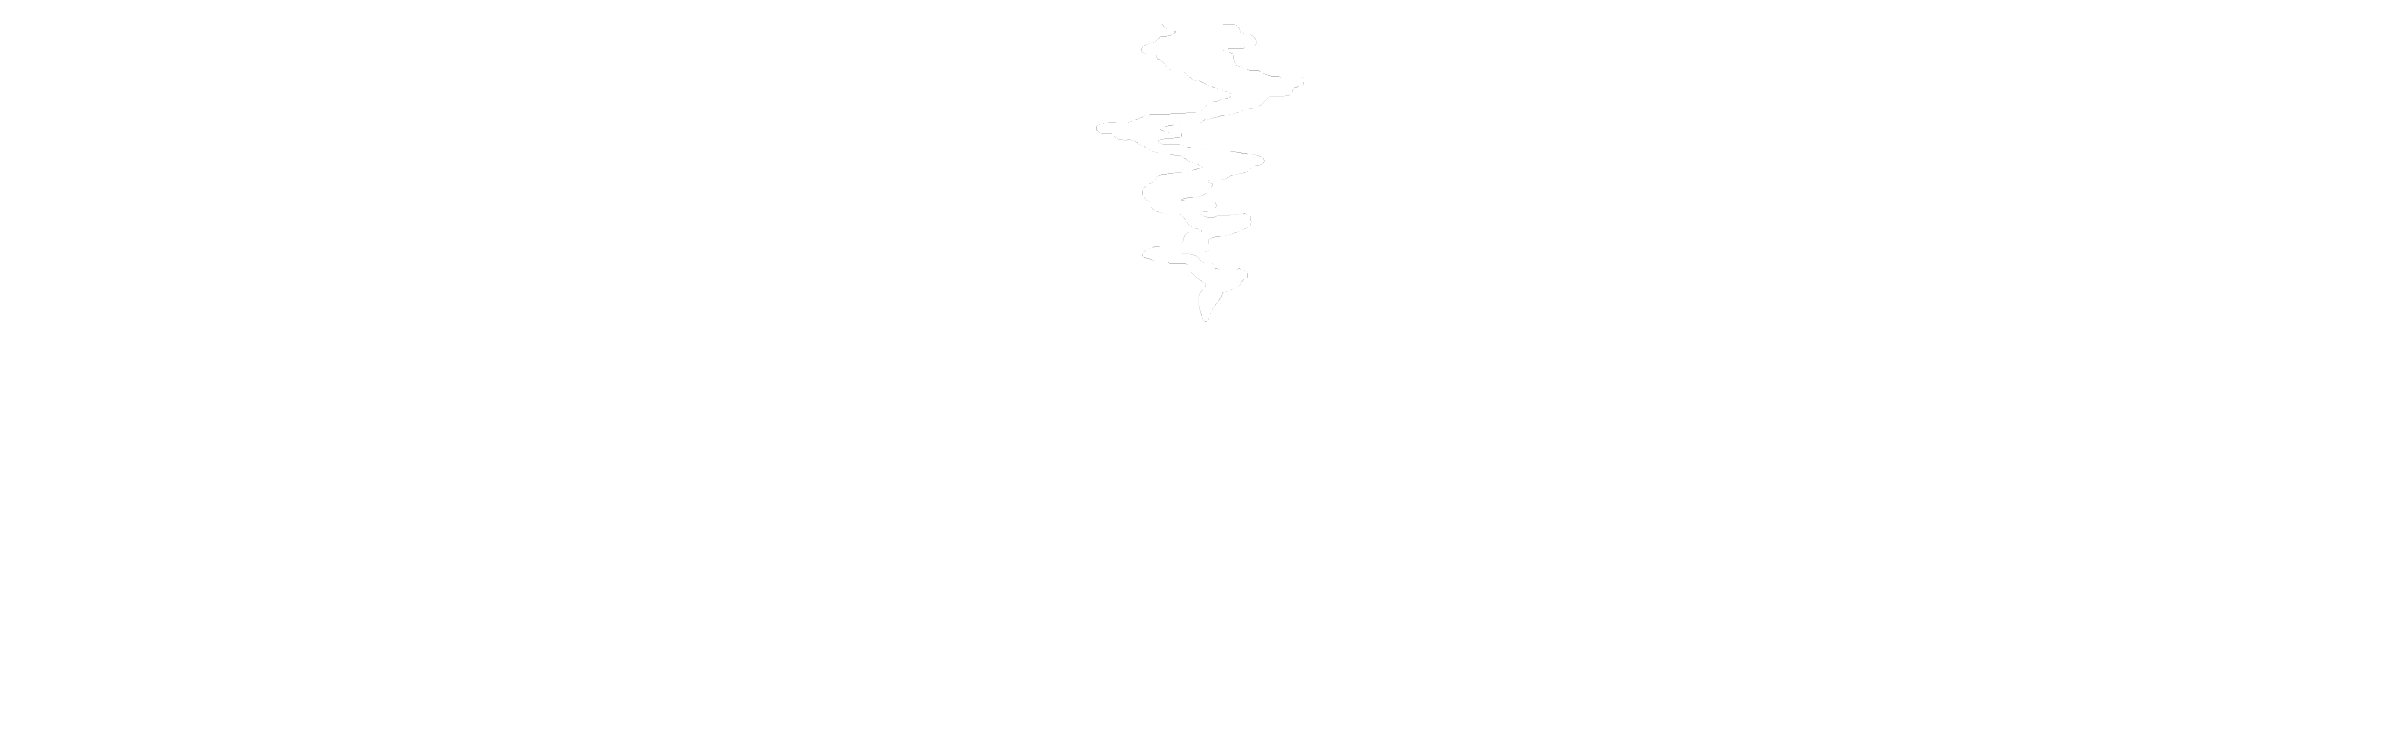 Classical Chinese Medicine | Heiner Fruehauf & Associates